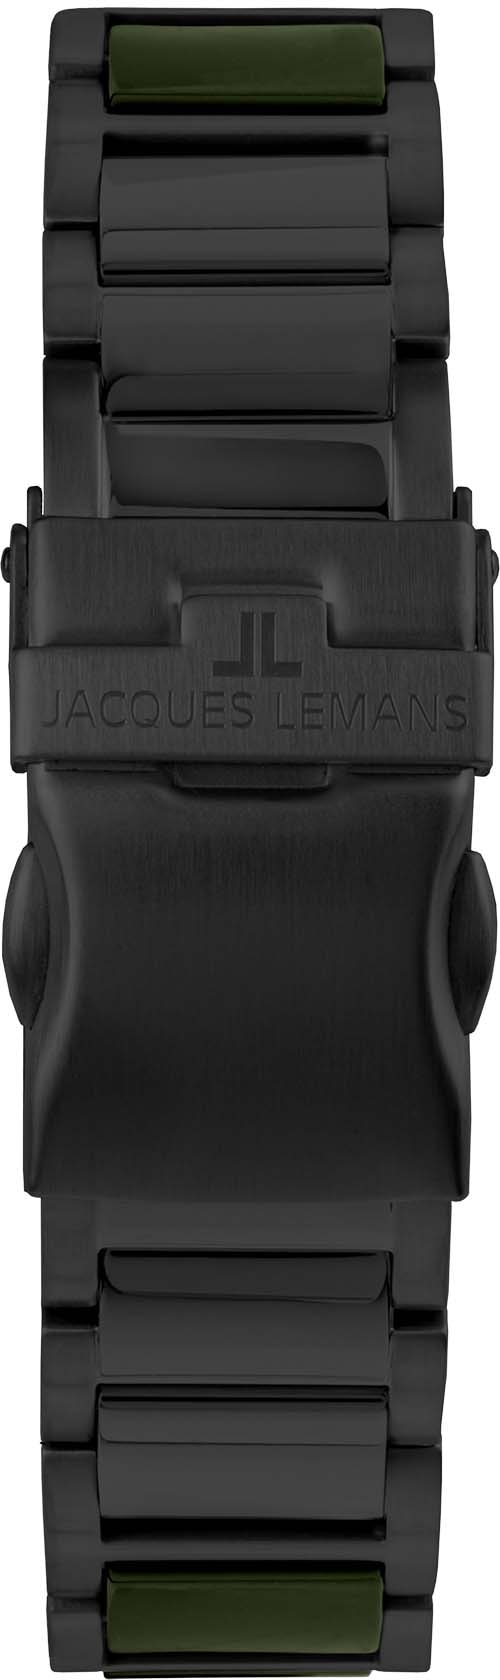 Jacques Lemans Keramikuhr »Liverpool, 42-10F«, Quarzuhr, Armbanduhr, Herrenuhr, Datum, Leuchtzeiger